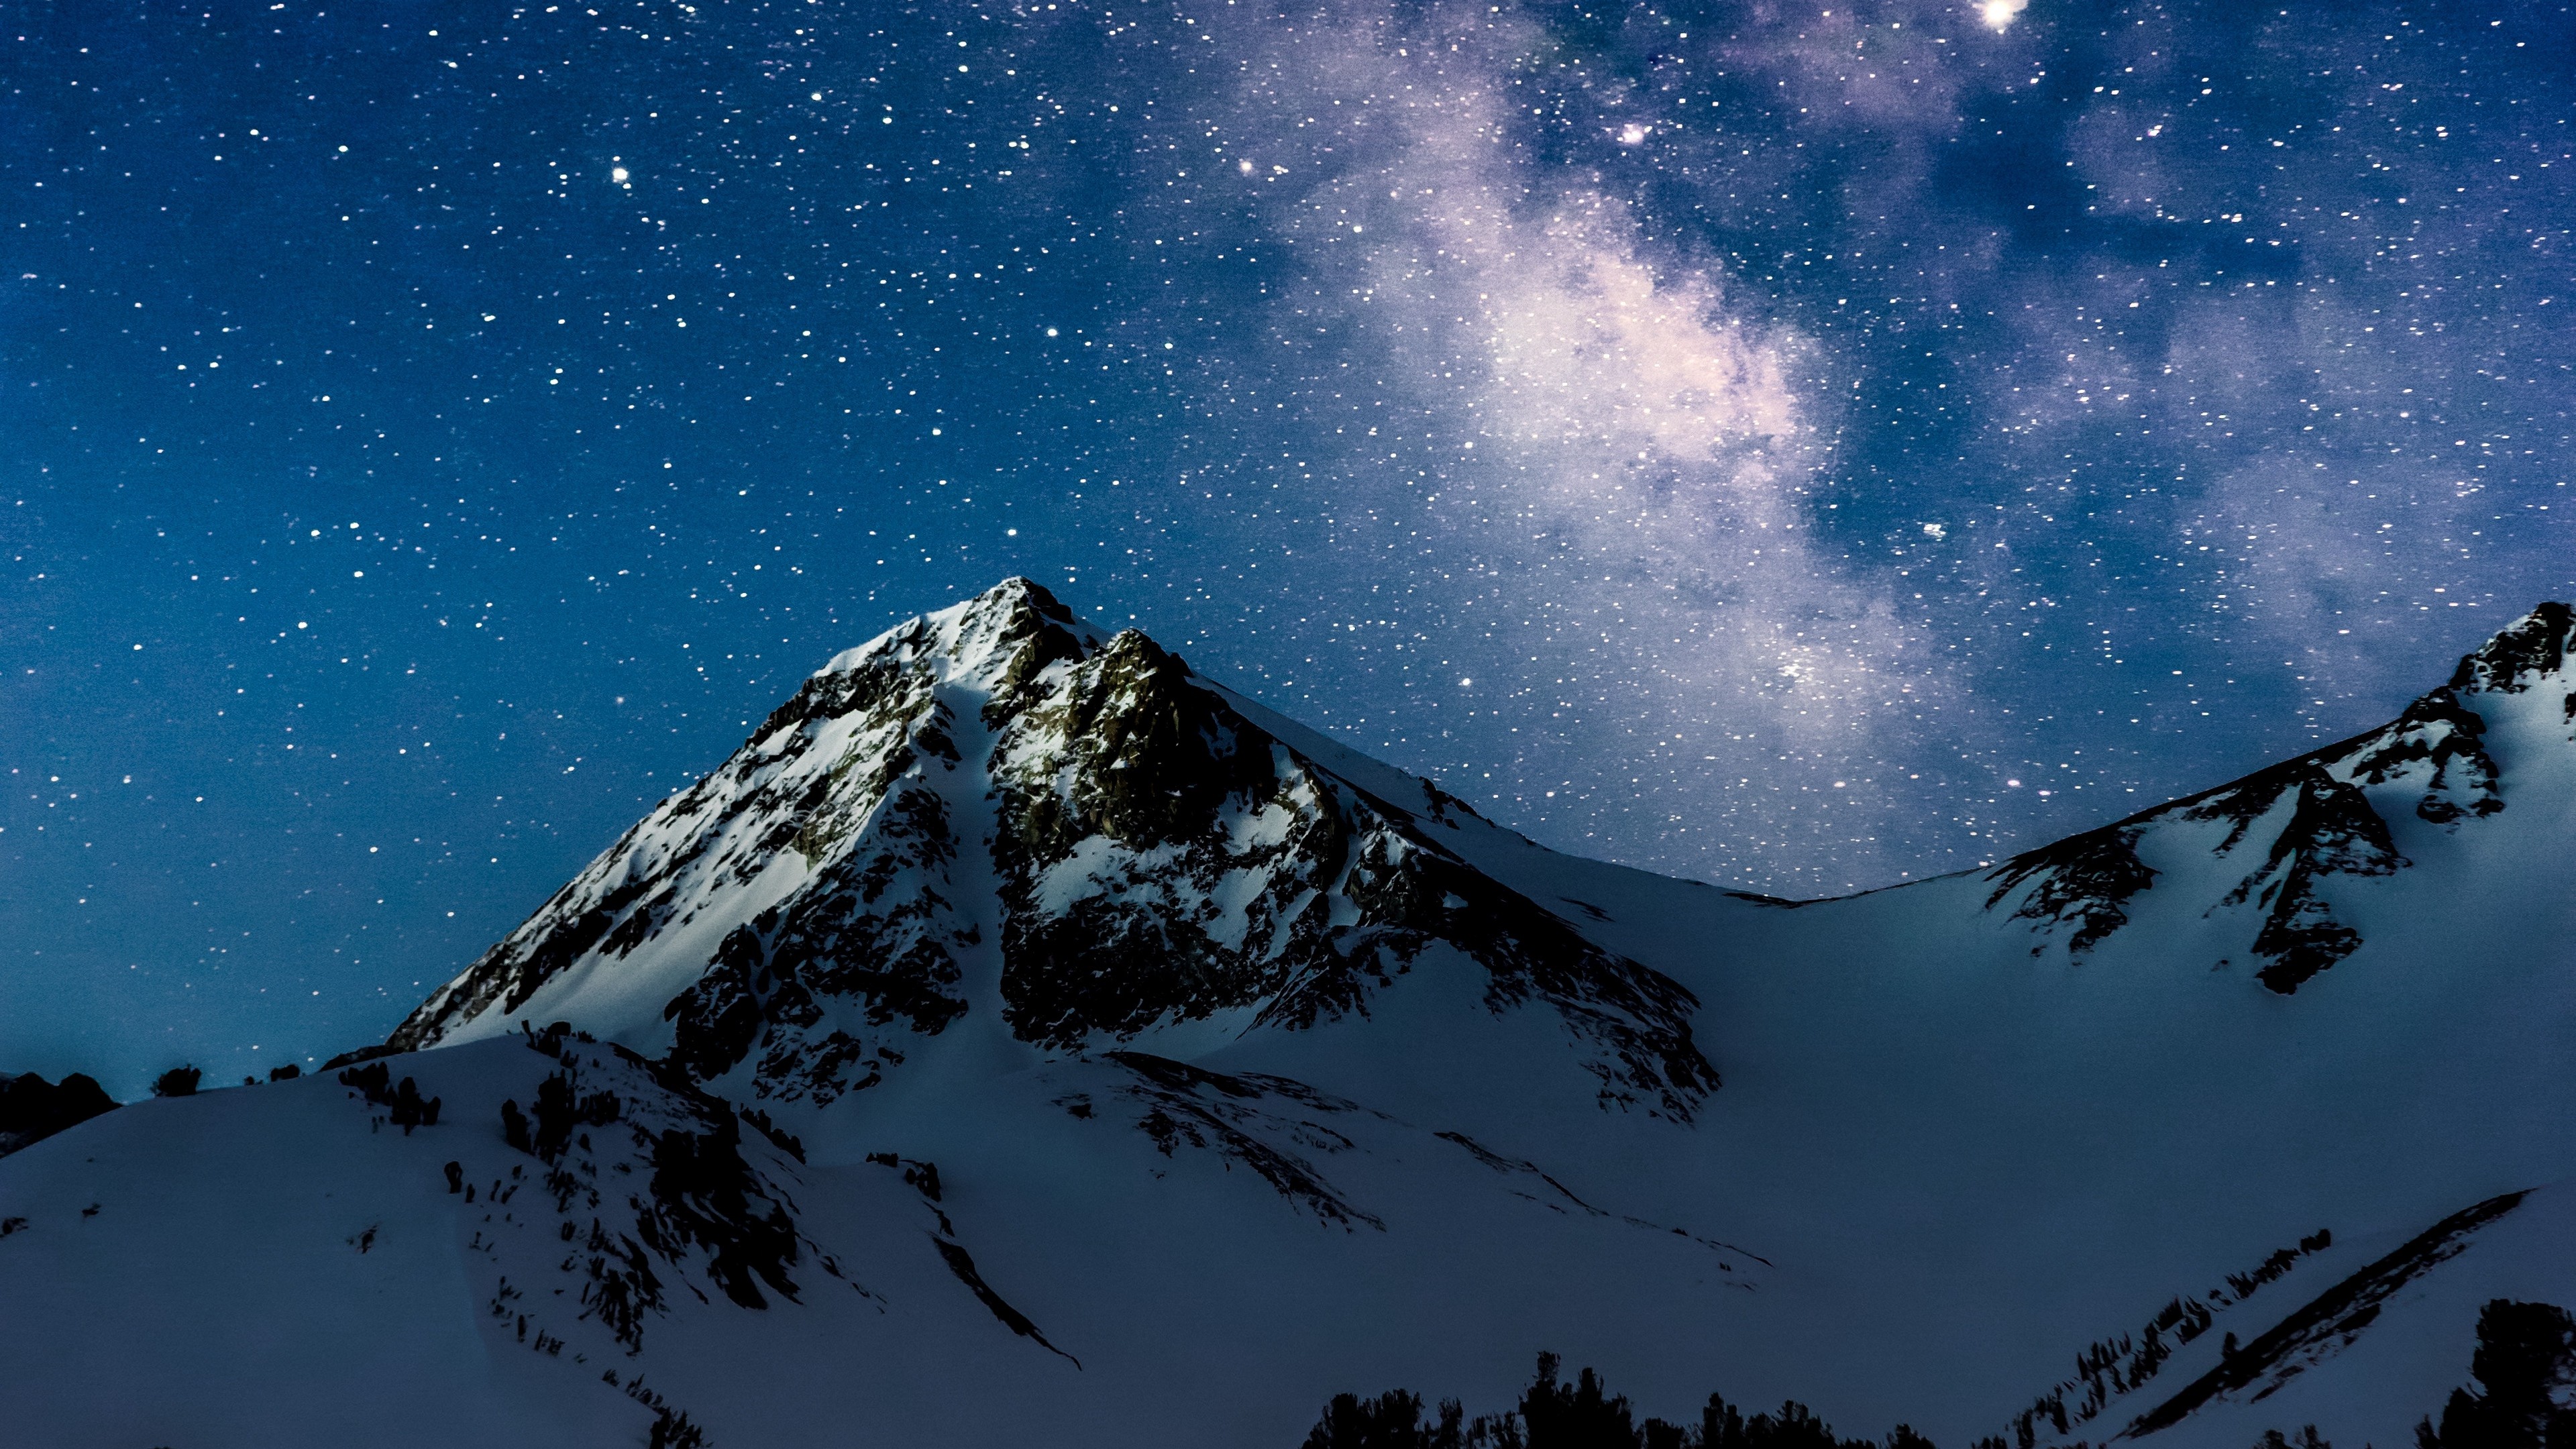 Night Mountain Wallpaper Images  Free Download on Freepik